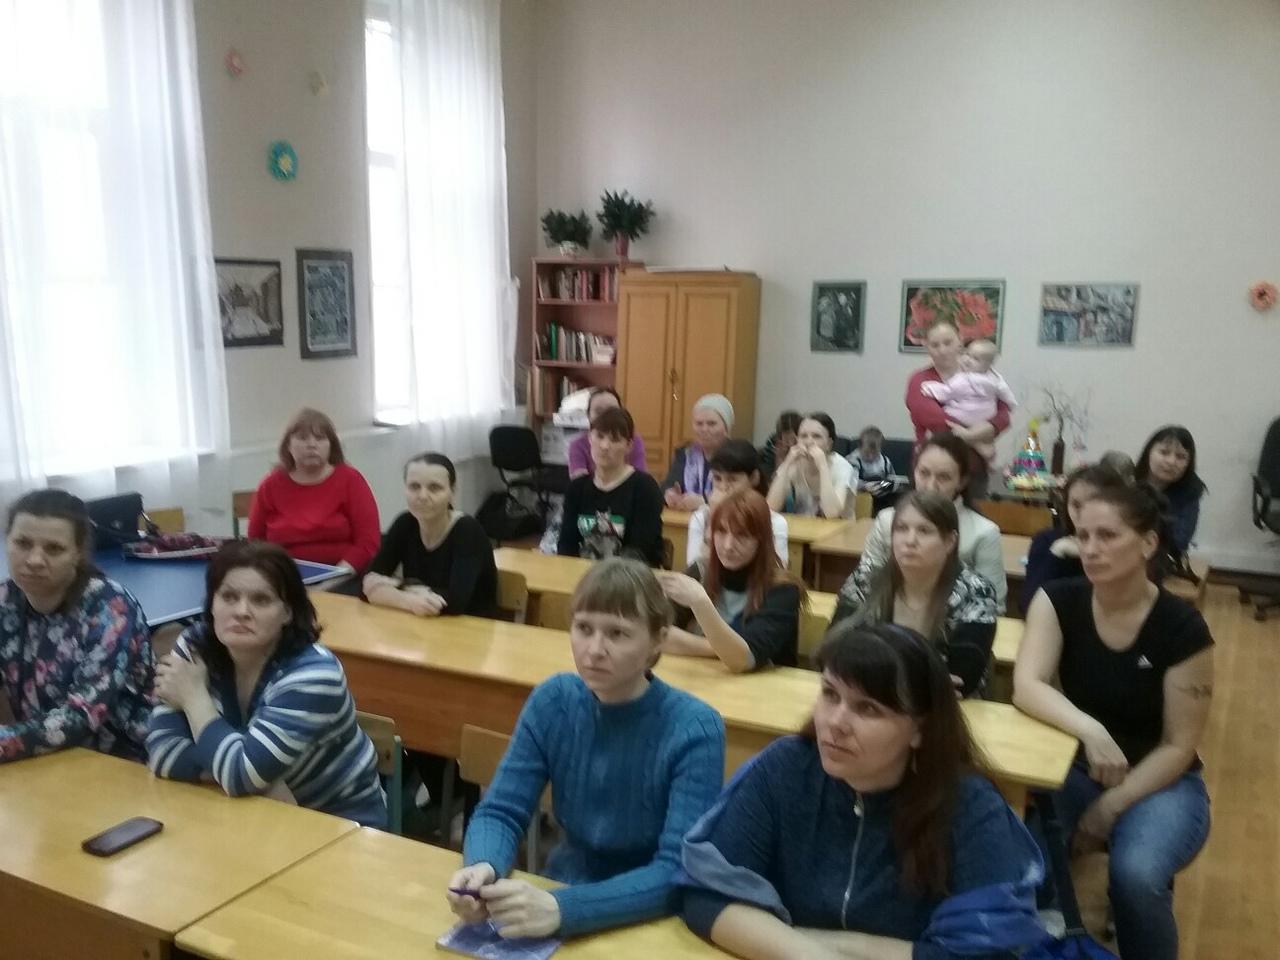 07 апреля 2019 года Устюжанина Ольга Ильинична провела лекцию по семейным отношениям